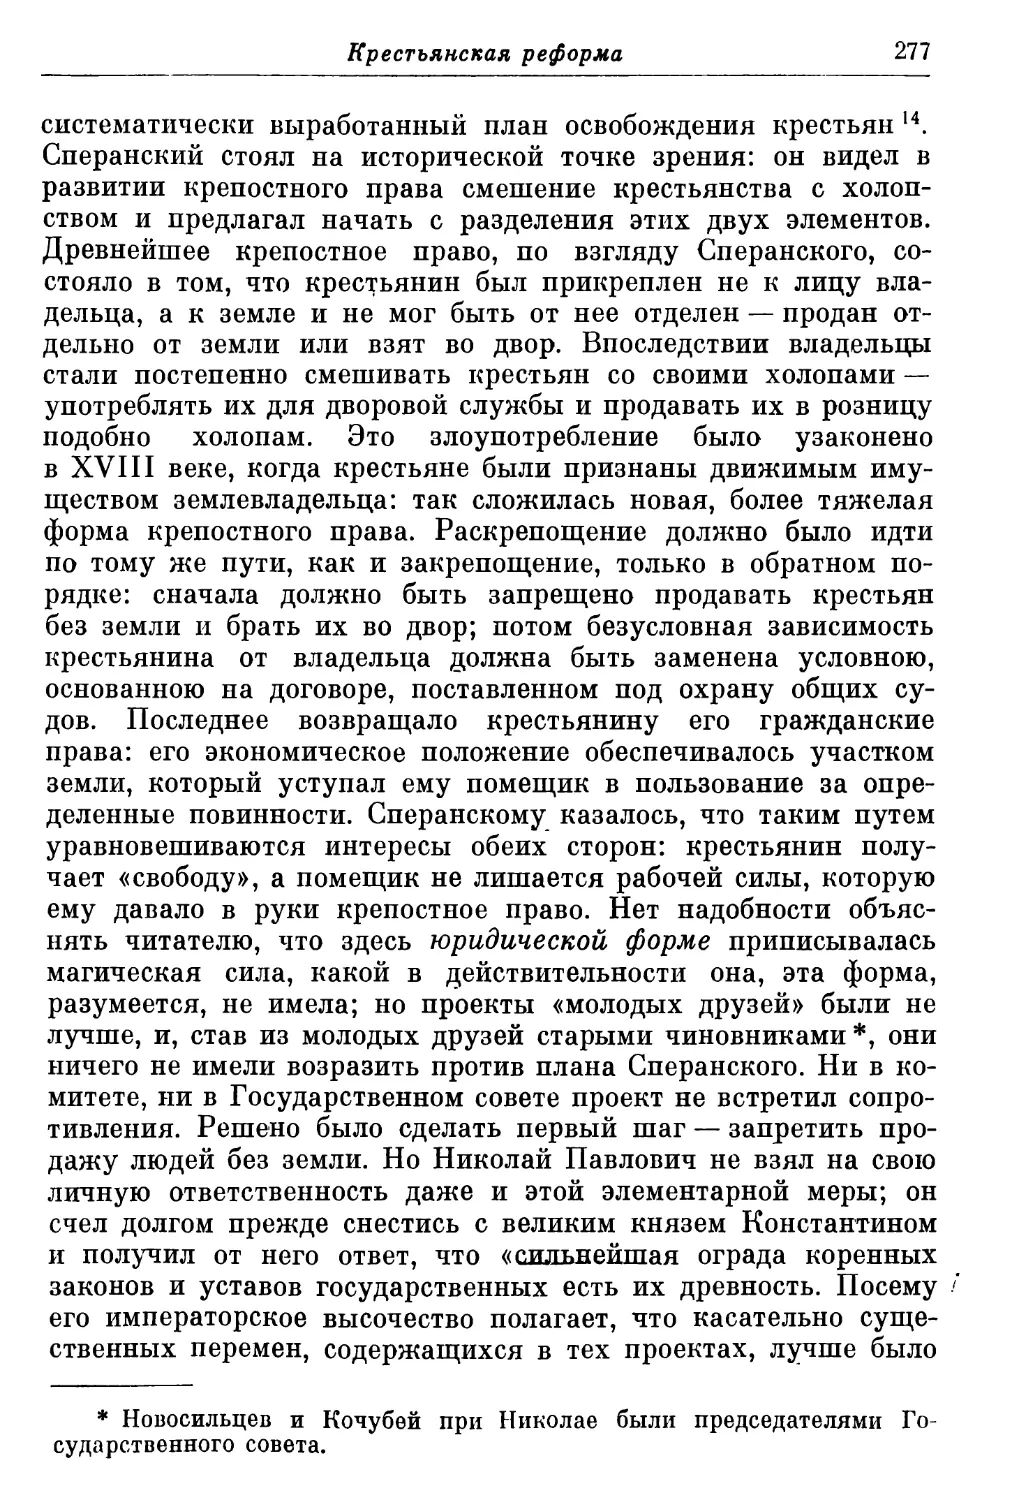 Крестьянский вопрос при Николае; Комитет 6 декабря 1826 года; проект Сперанского